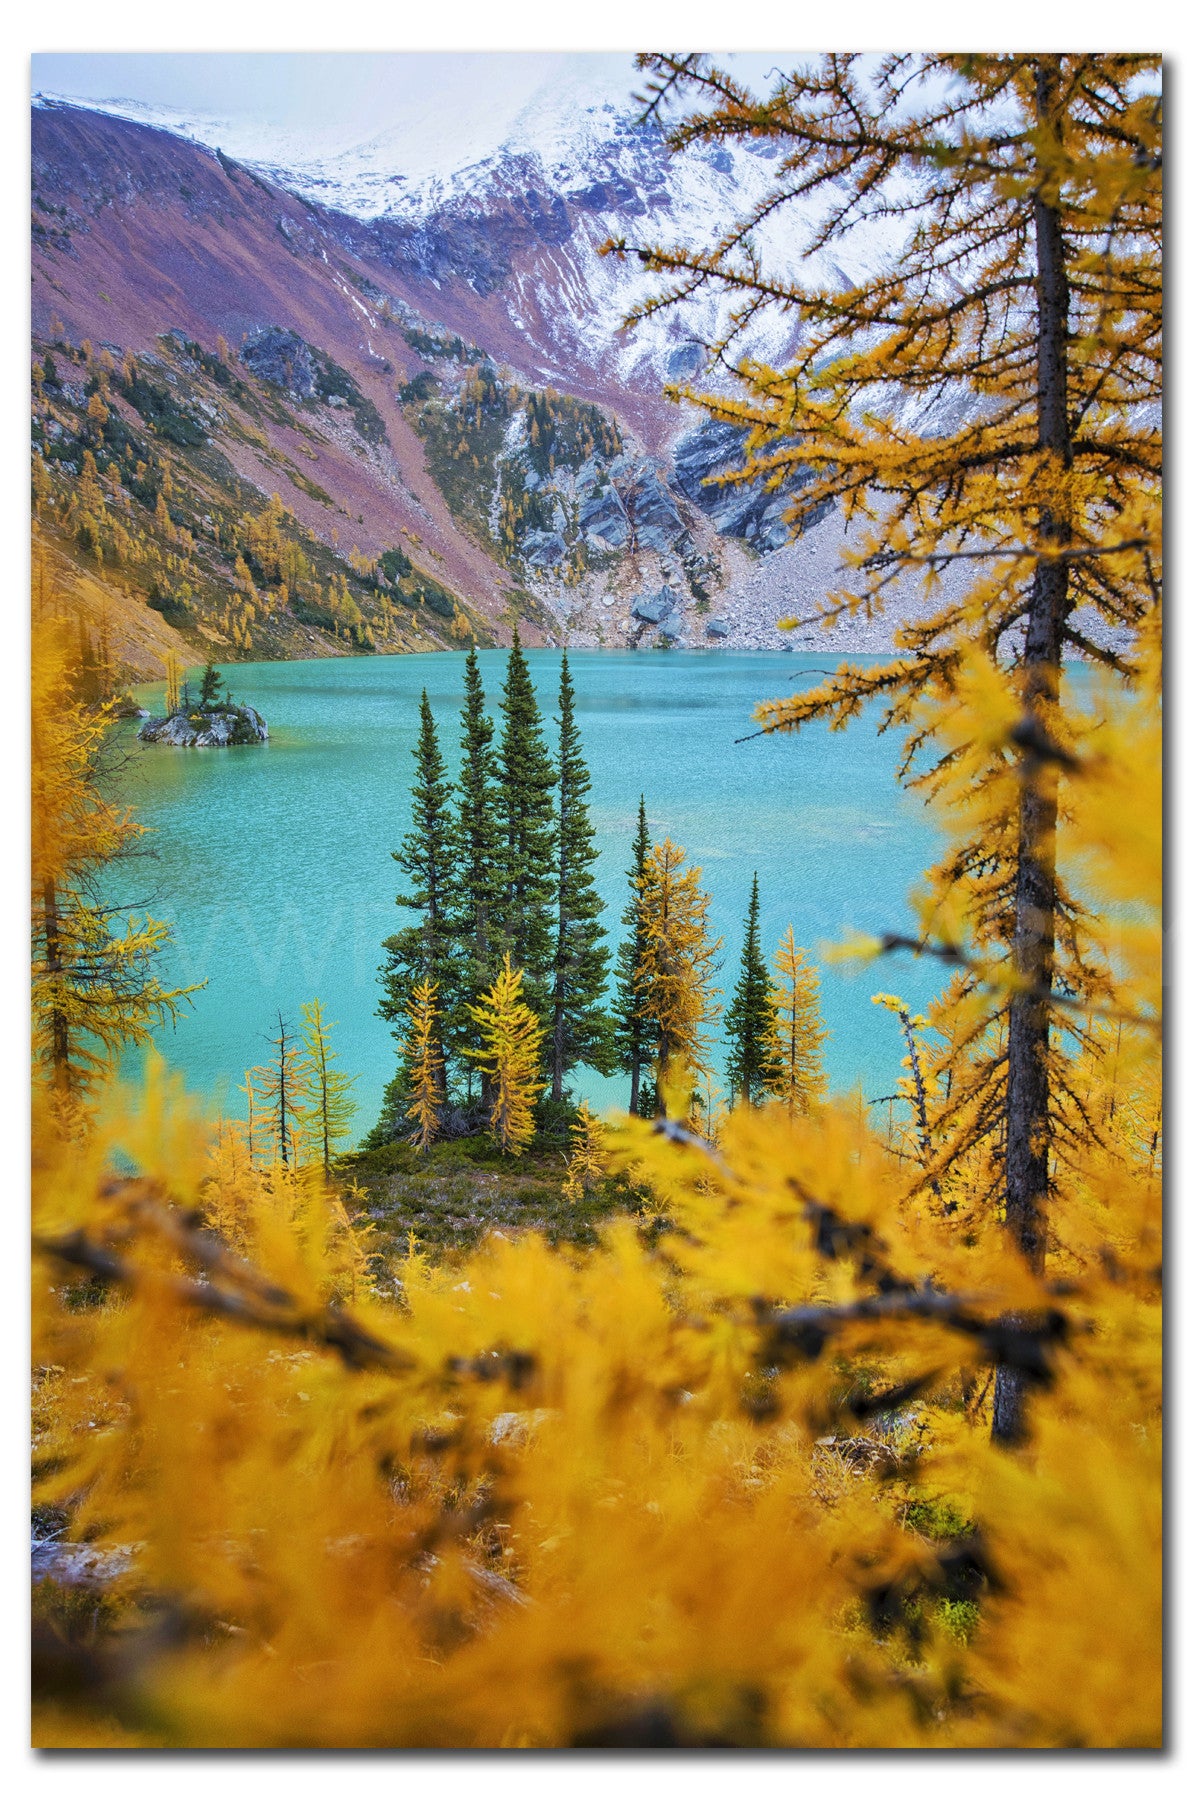 Alerces + Lago Mágico<br> Canadá<br> Archivo de edición limitada<br> Impresión cromogénica de bellas artes